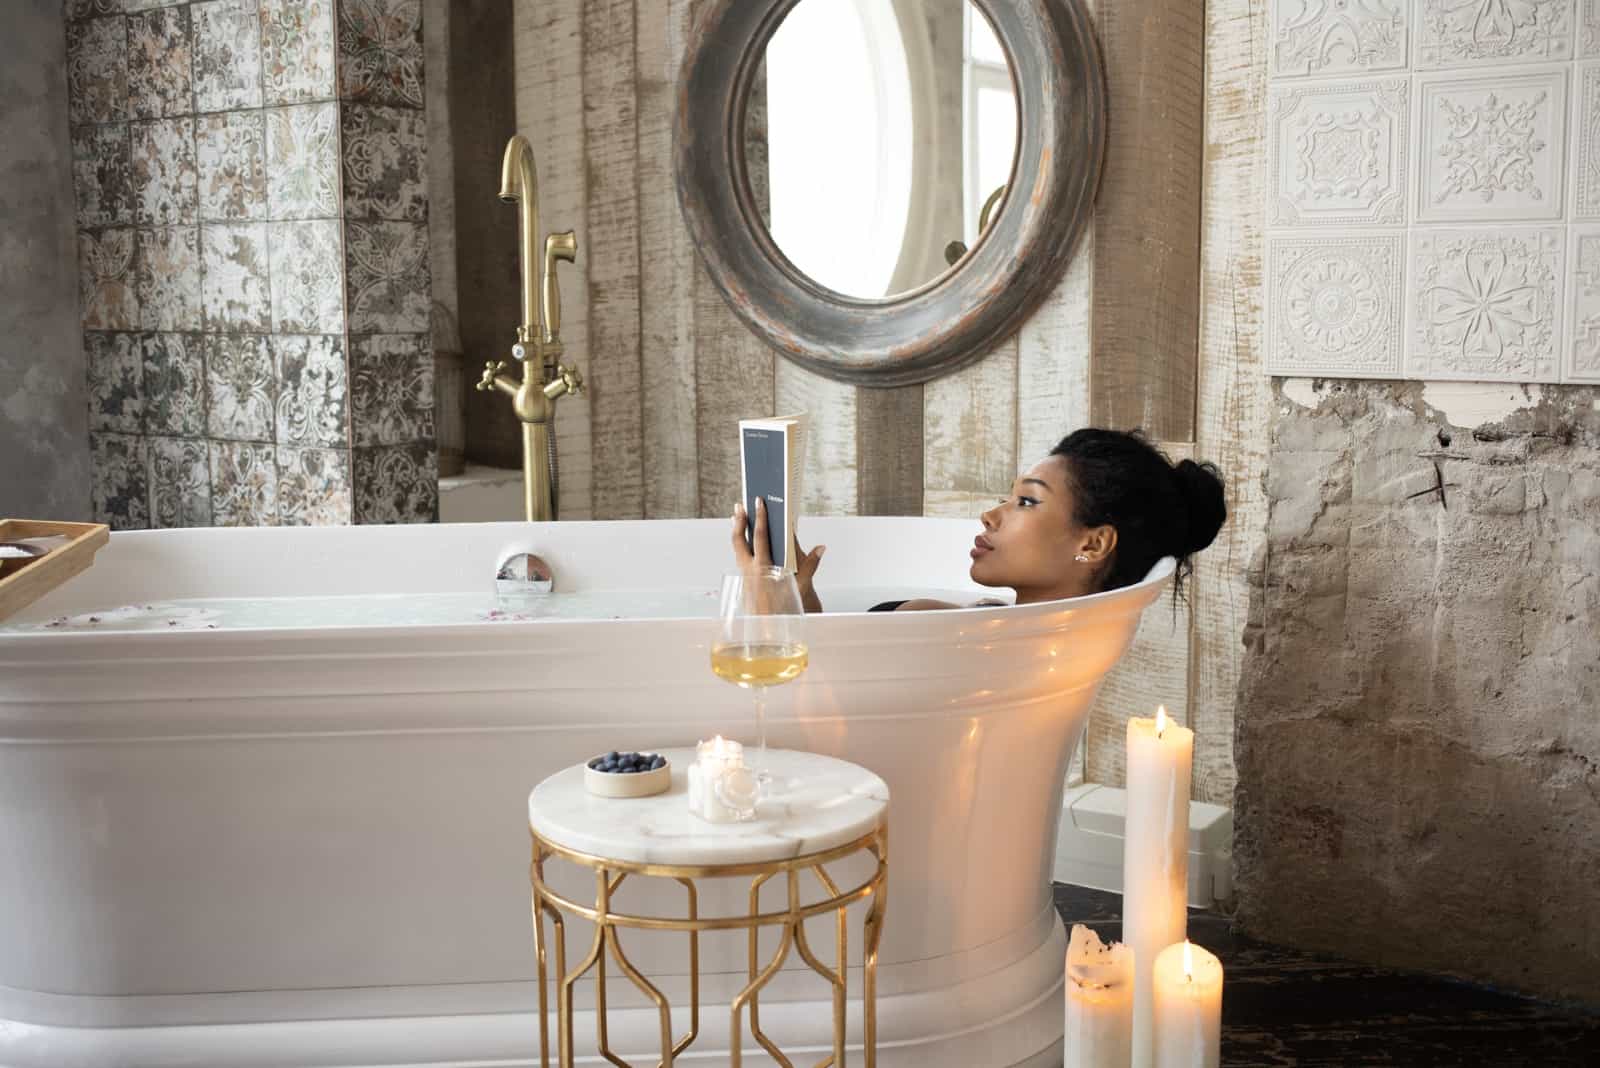 Femme lisant un livre tout en se relaxant dans une baignoire